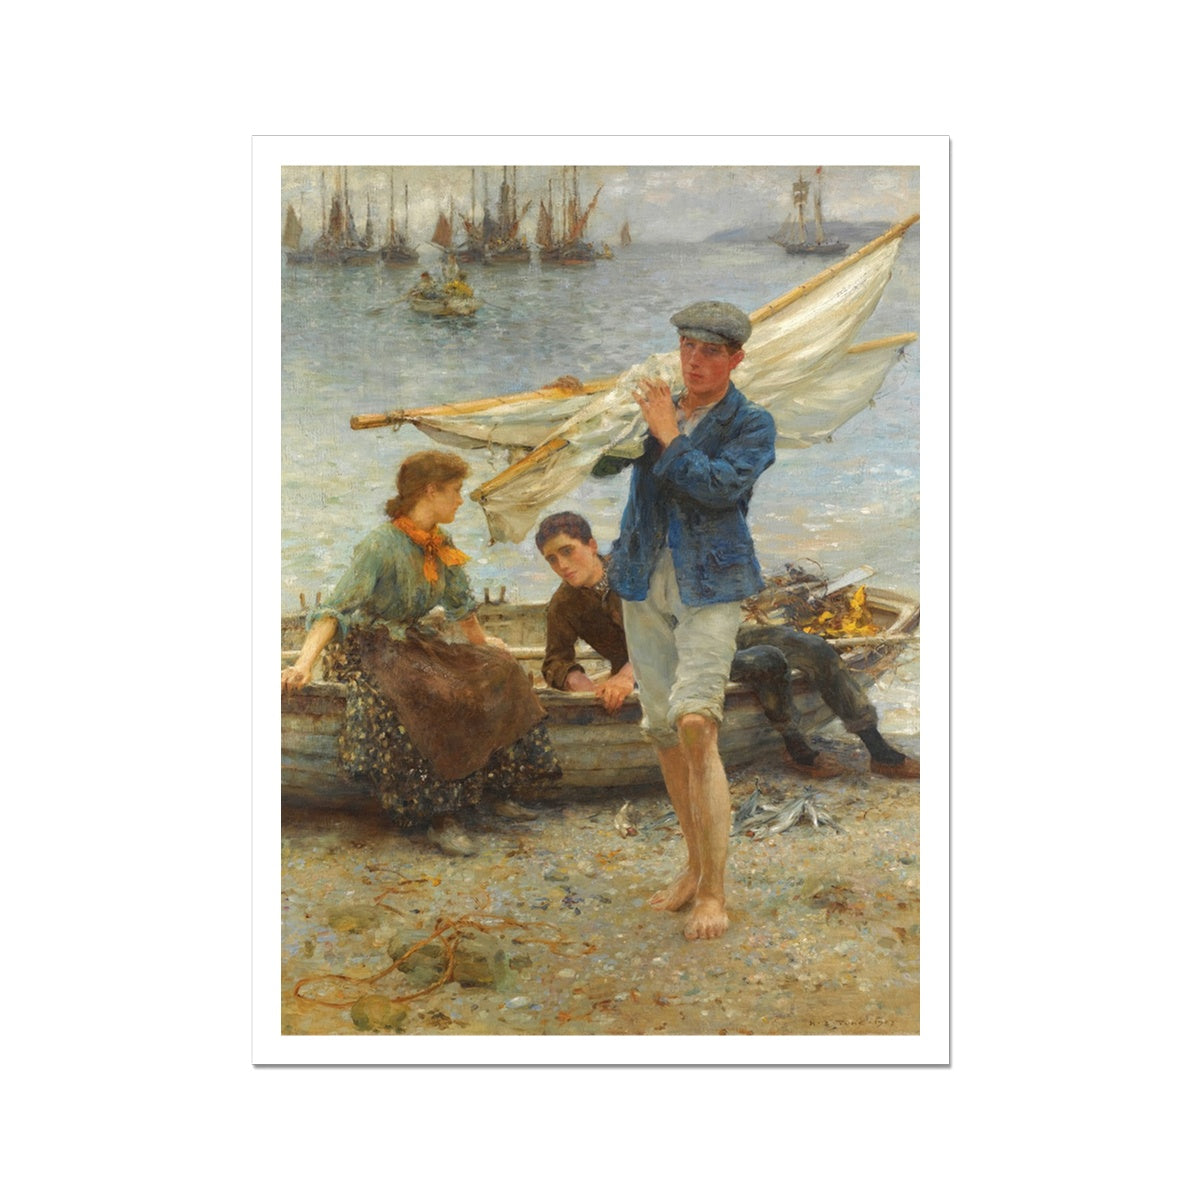 Henry Scott Tuke Open Edition Art Print. Return from Fishing. Art Gallery Historic Art